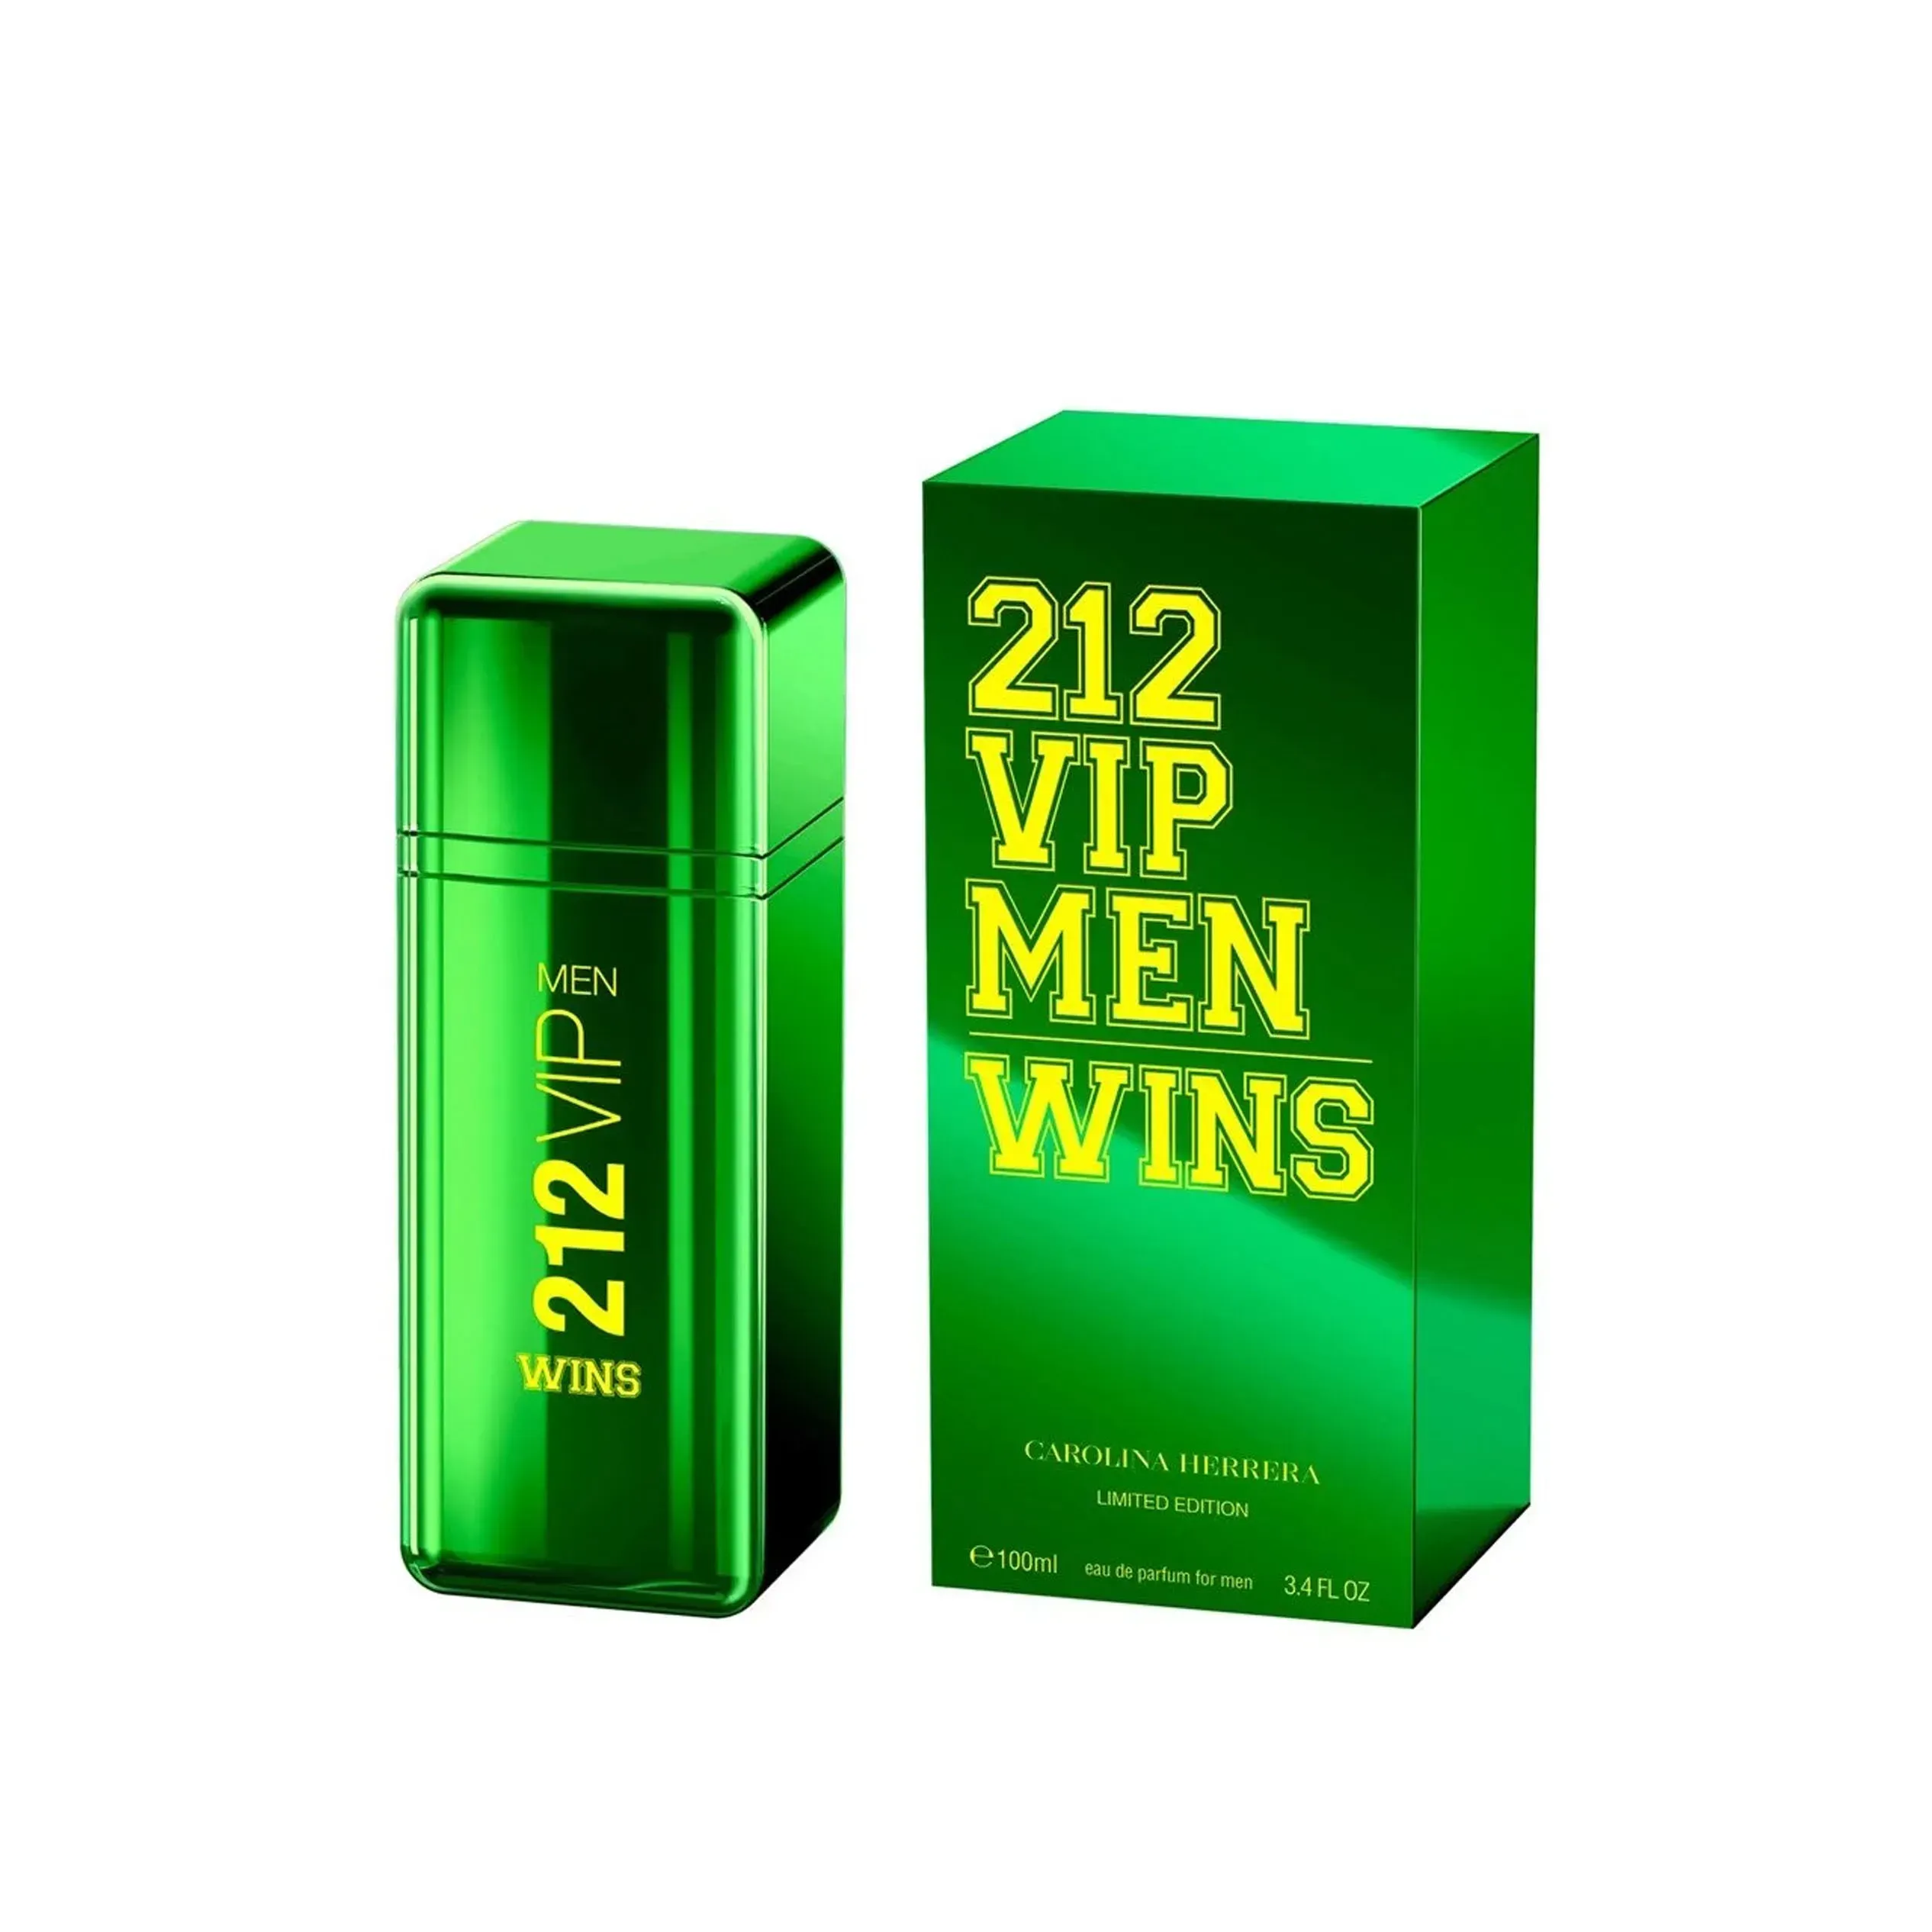 Perfume 212 VIP Men Wins Carolina Herrera (Replica Importada)- Hombre